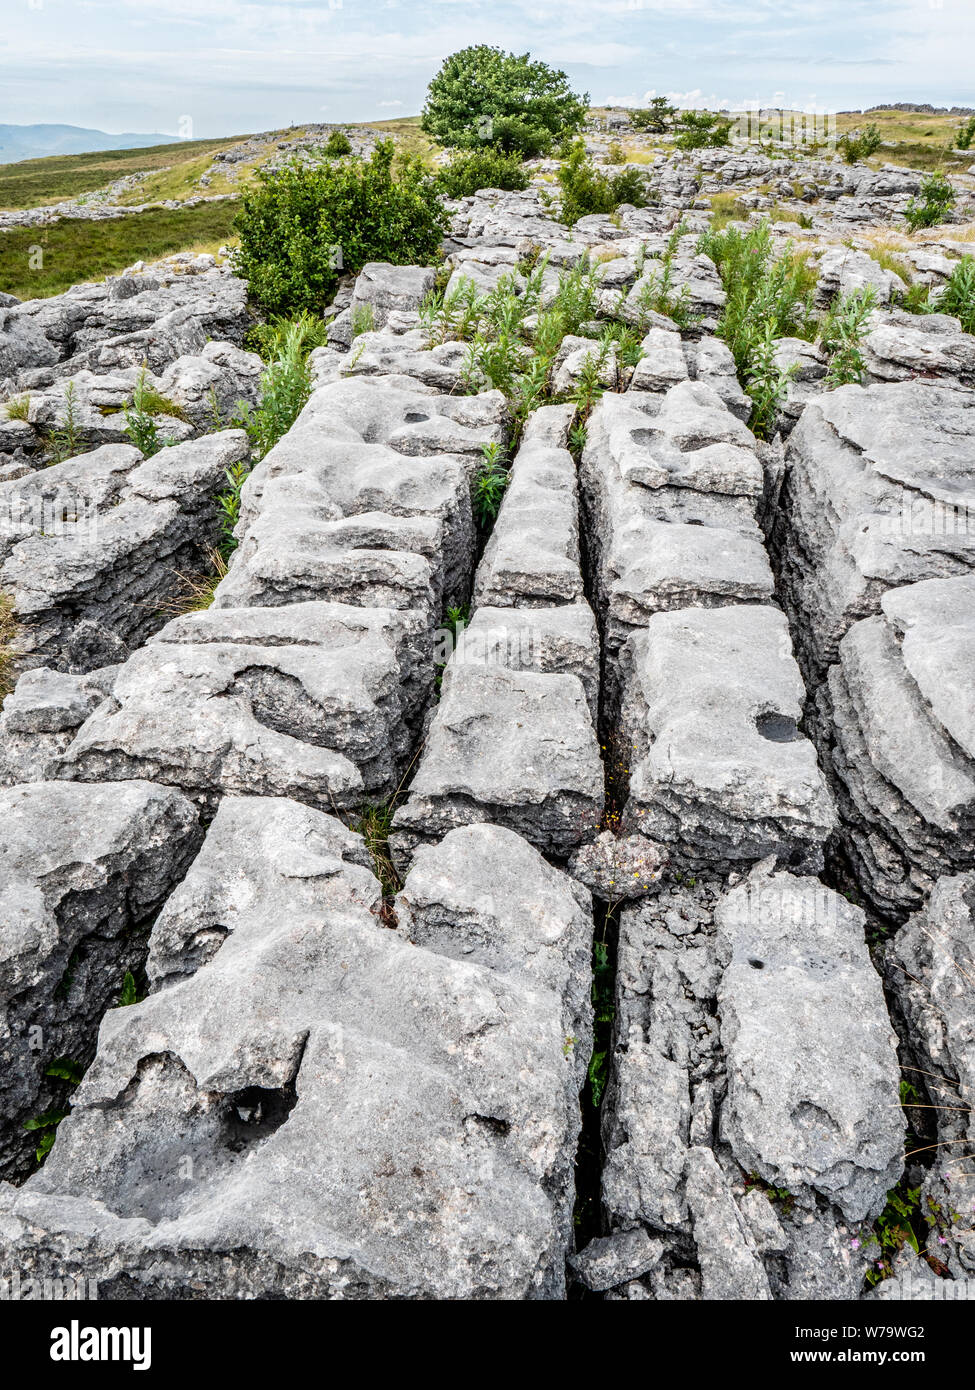 Kalkstein Pflaster oder clints und grykes aus der Lösung Verwitterung der Eiszeitlich ausgesetzt Kalkstein an Great Asby Narbe in Cumbria UK gebildet Stockfoto